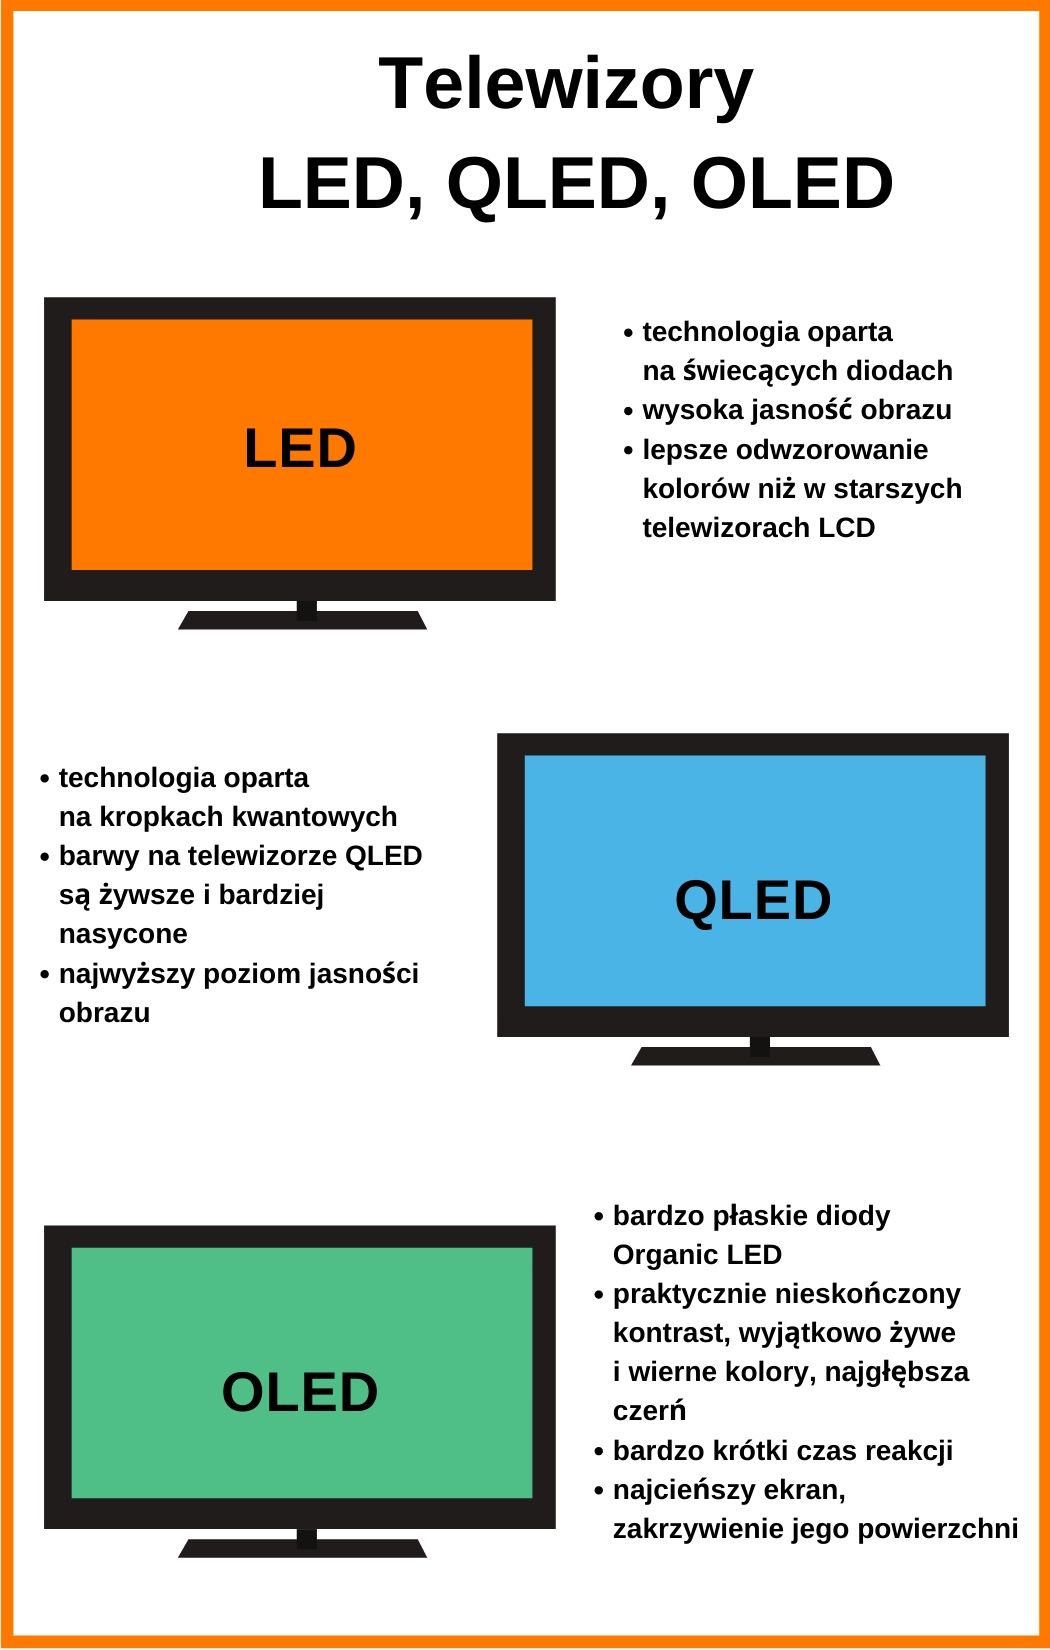 Jaka jest różnica między LED a OLED?